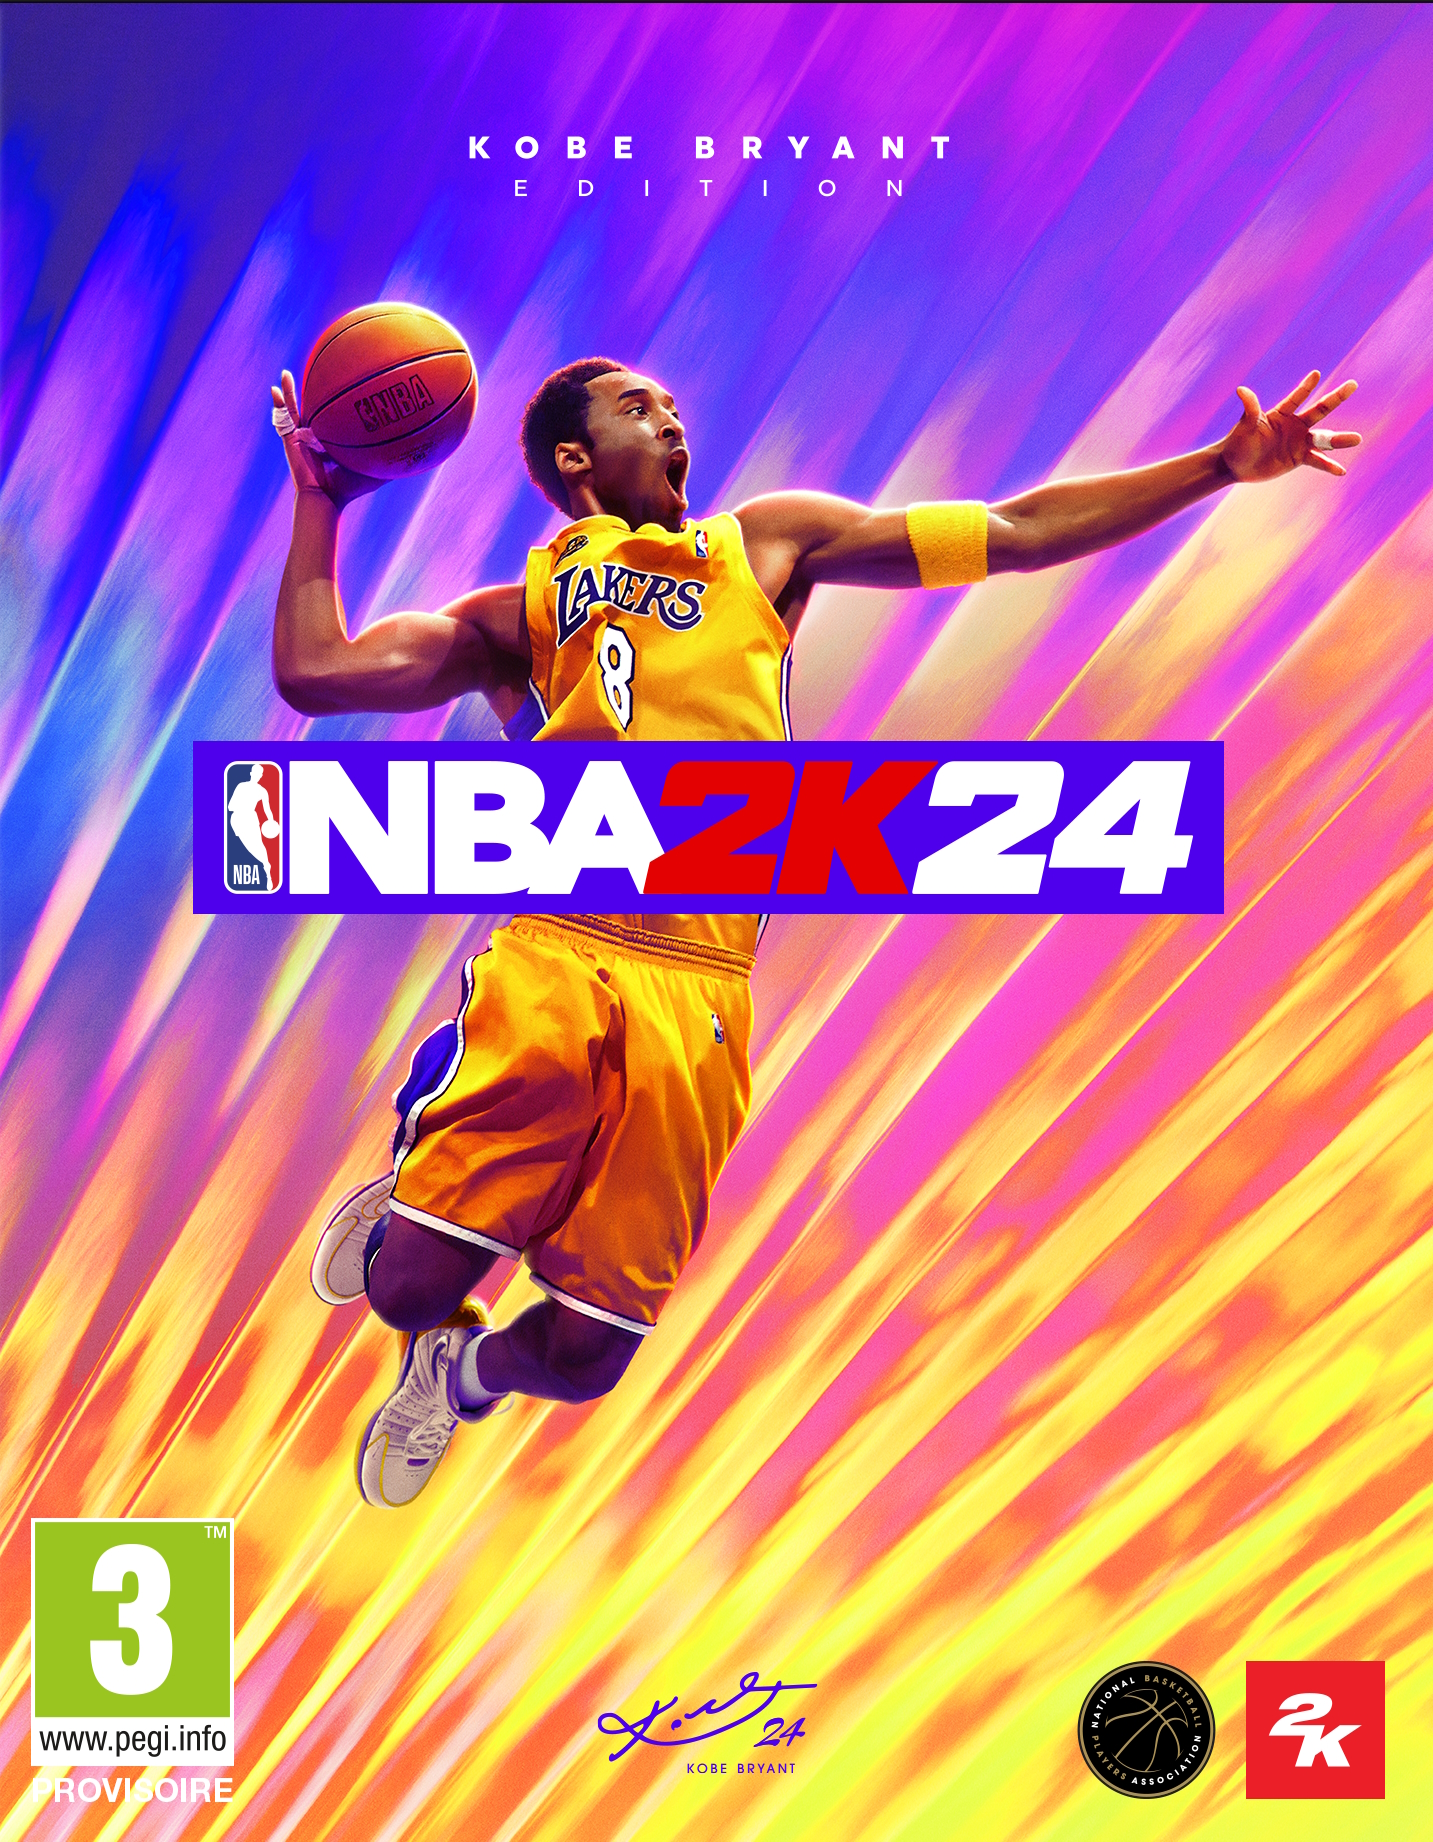 jaquette reduite de NBA 2K24 sur PC